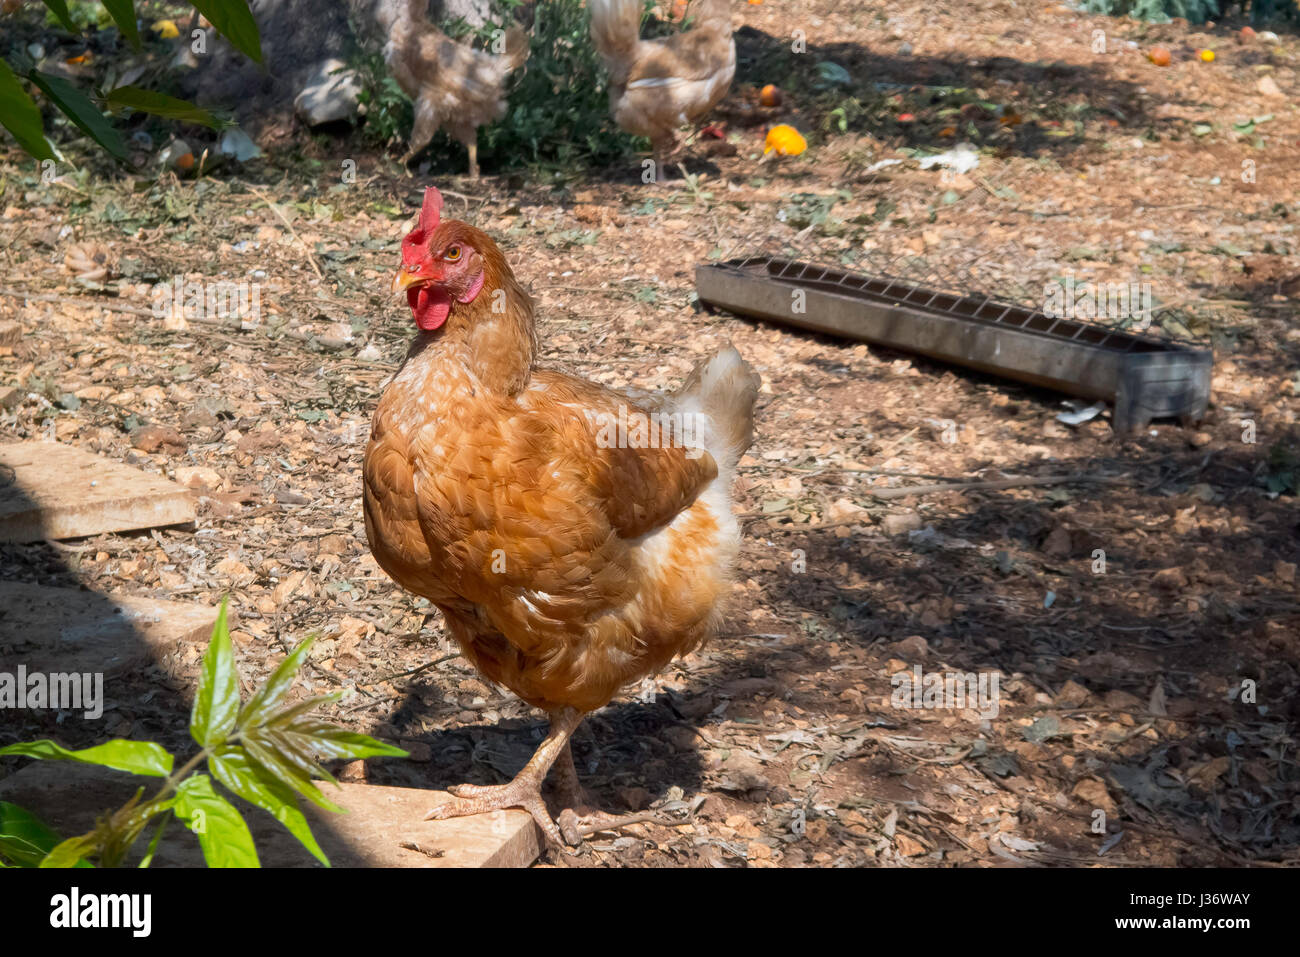 Hens outdoors farm. Stock Photo